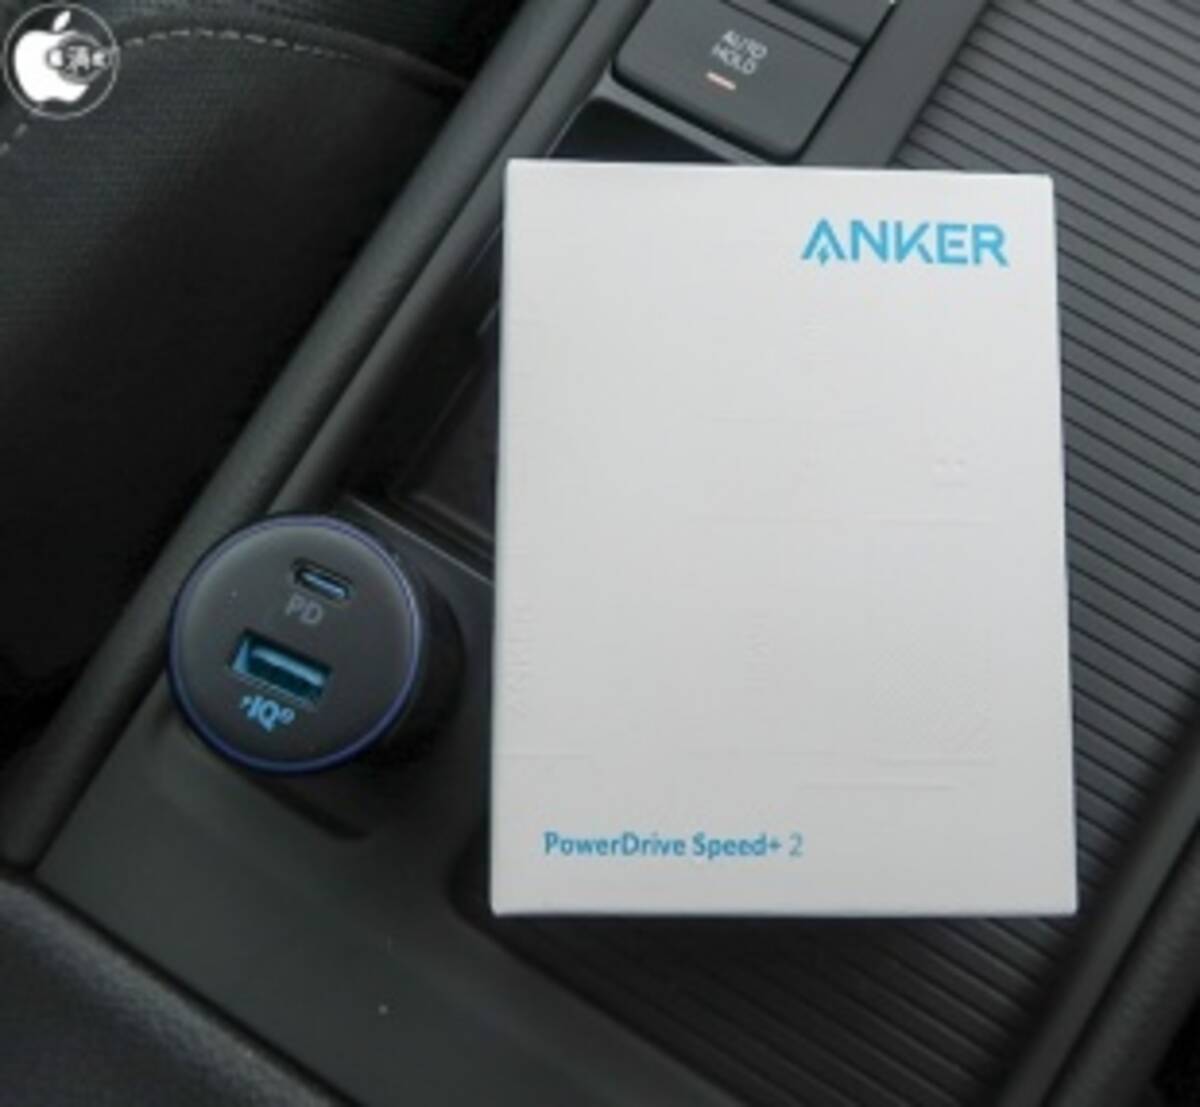 アンカー・ジャパンのカーチャージャー「Anker PowerDrive Speed+2-1 PD  1 PowerIQ 2.0」を試す  (2019年7月5日) - エキサイトニュース